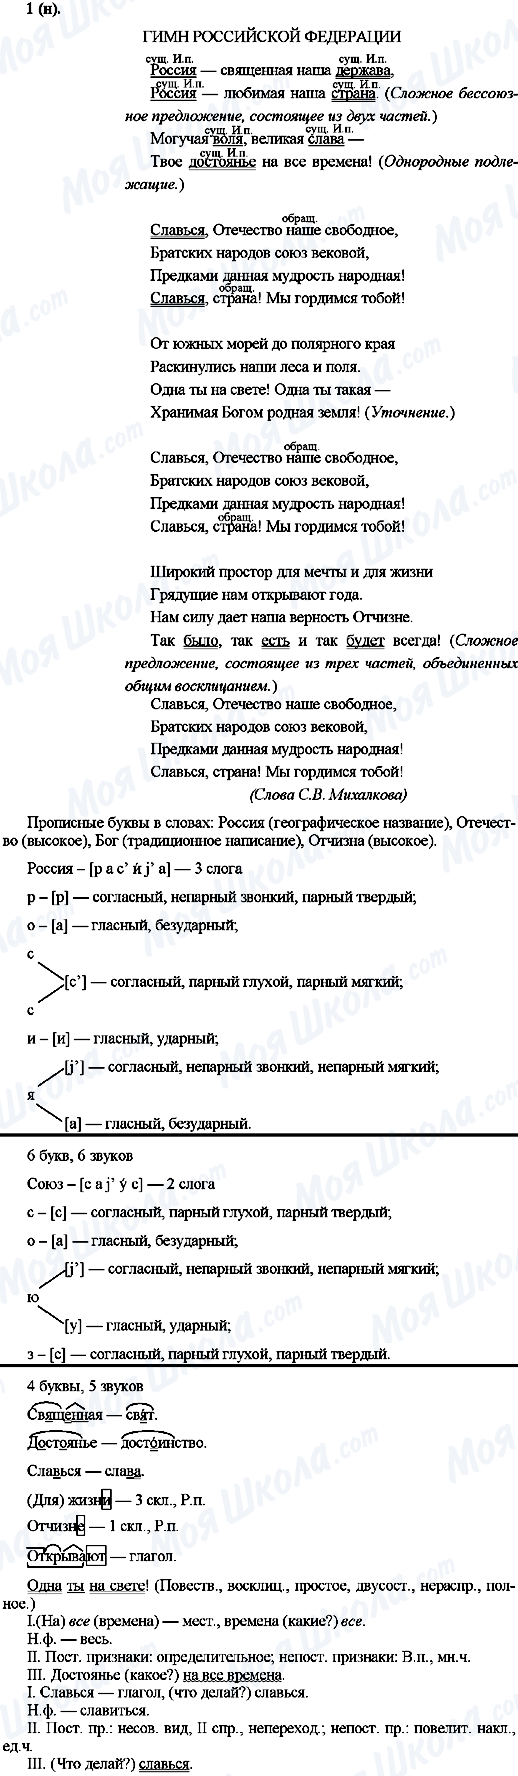 ГДЗ Русский язык 10 класс страница 1(н)